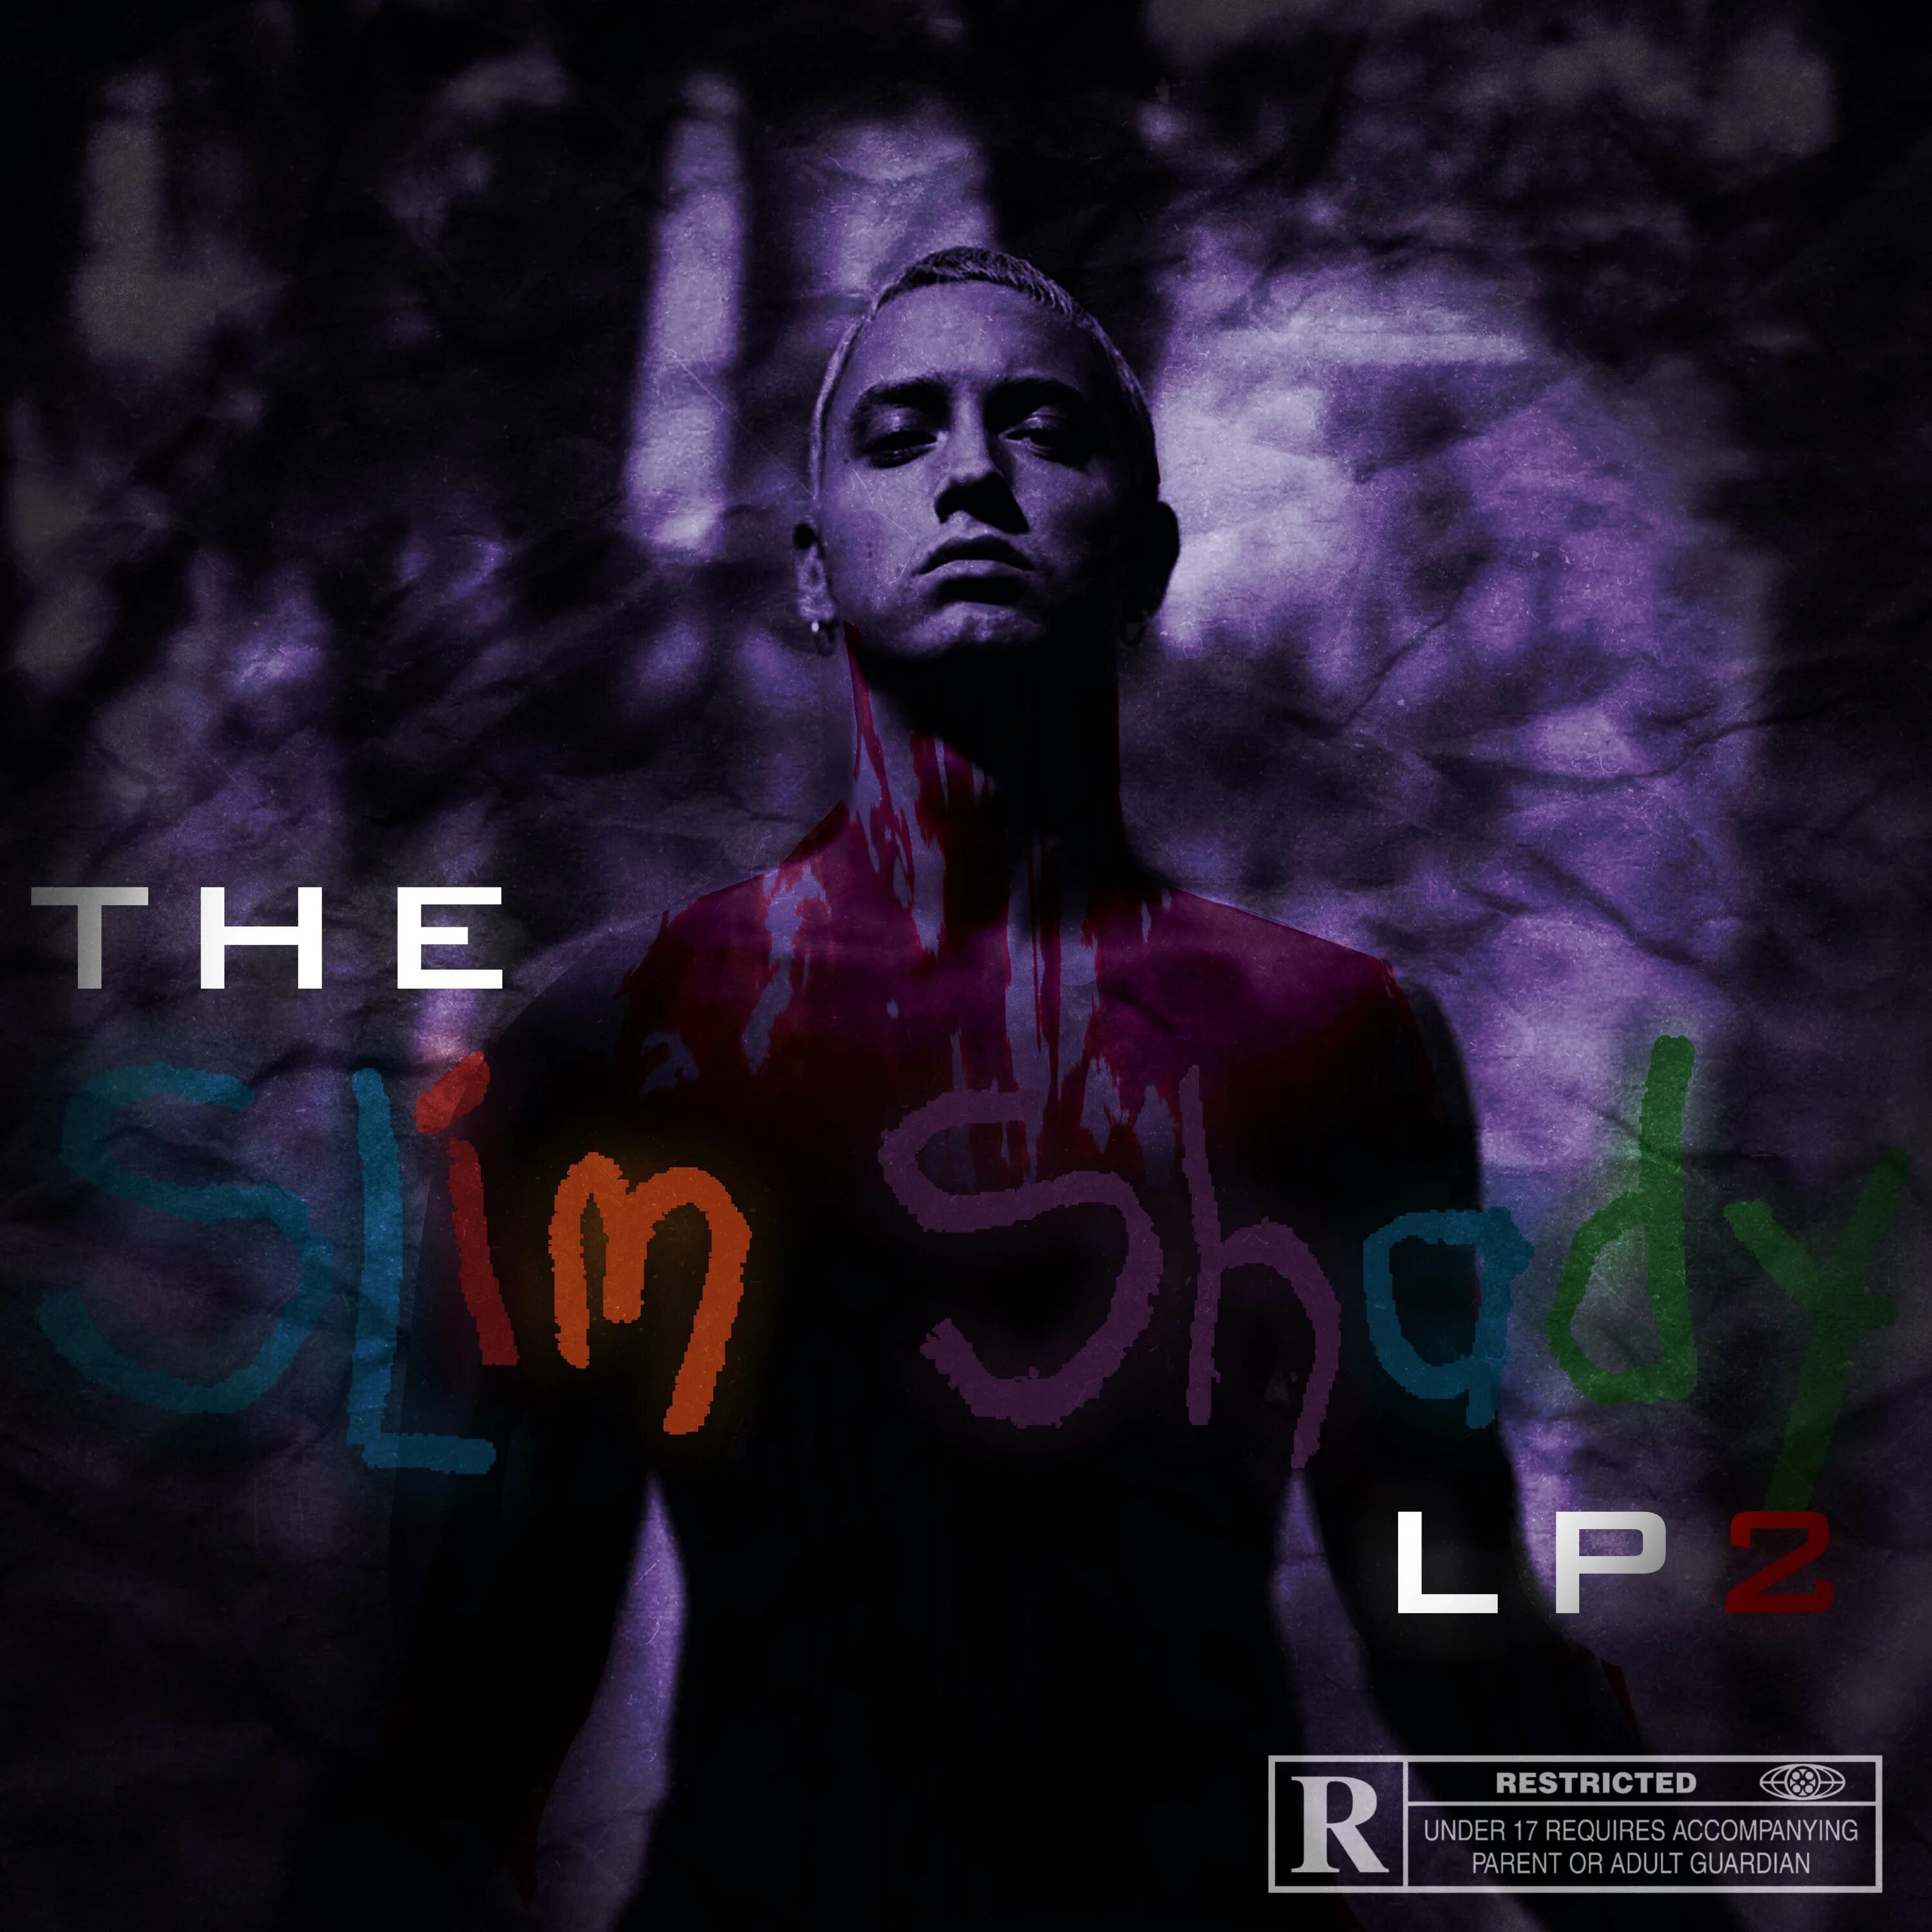 Slim shady перевод песни. Eminem the Slim Shady LP обложка. The Slim Shady LP обложка. Эминем the Slim Shady LP обложка. The Slim Shady LP Эминем.